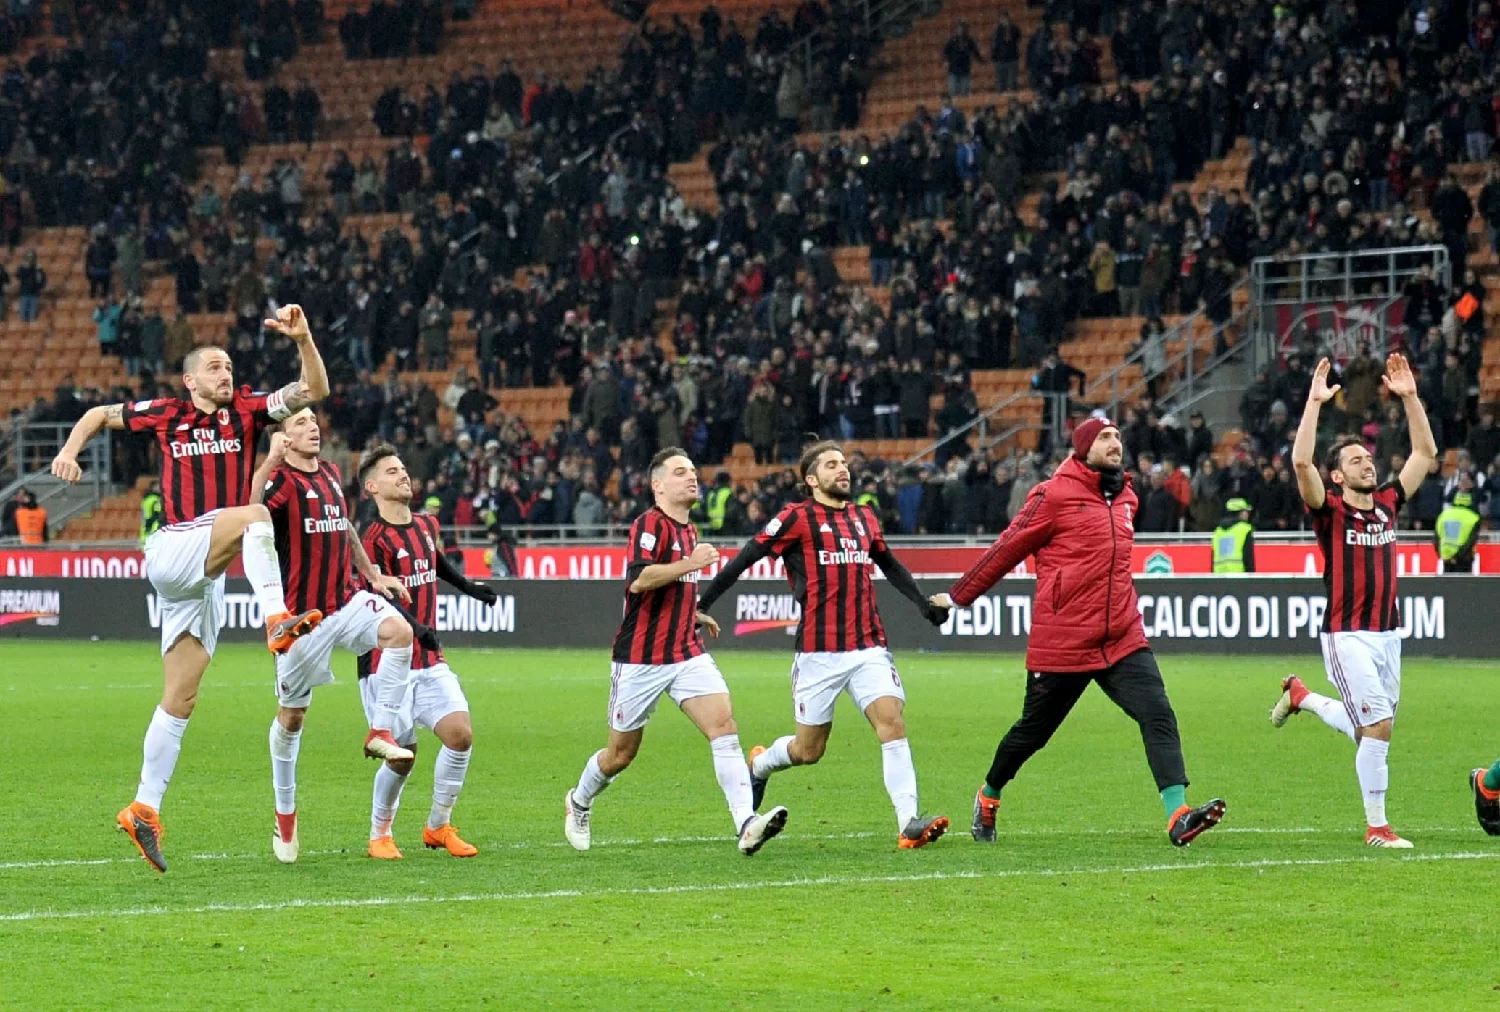 SM PHOTOGALLERY/ Milan-Sampdoria 1-0, il foto-racconto del match